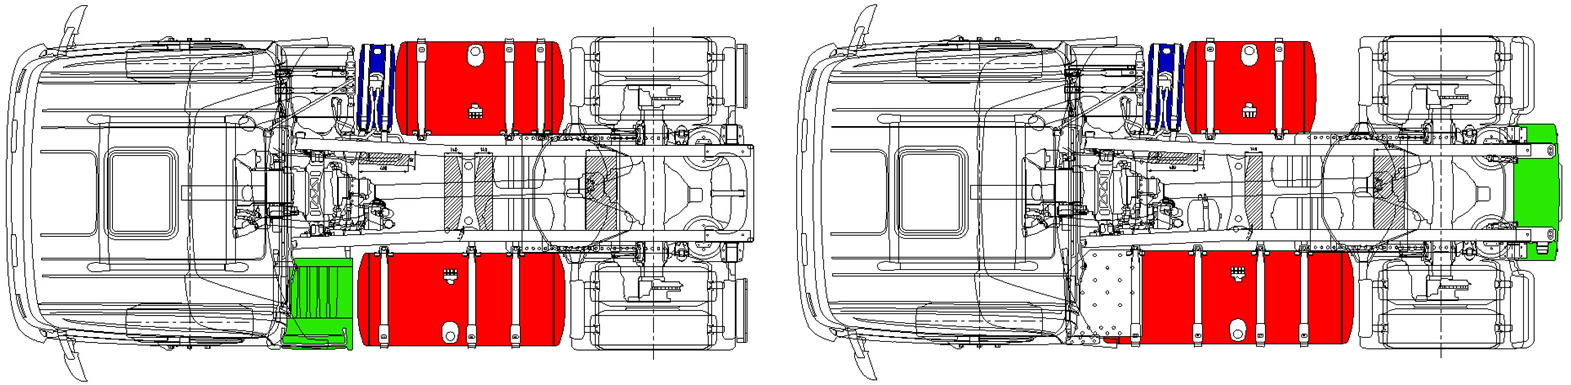 9 (9) foi escolhida de modo a permitir aos clientes, numa fase posterior, especificar um sistema de escape vertical (chaminé de aspiração), por exemplo, nos camiões de oito rodas.